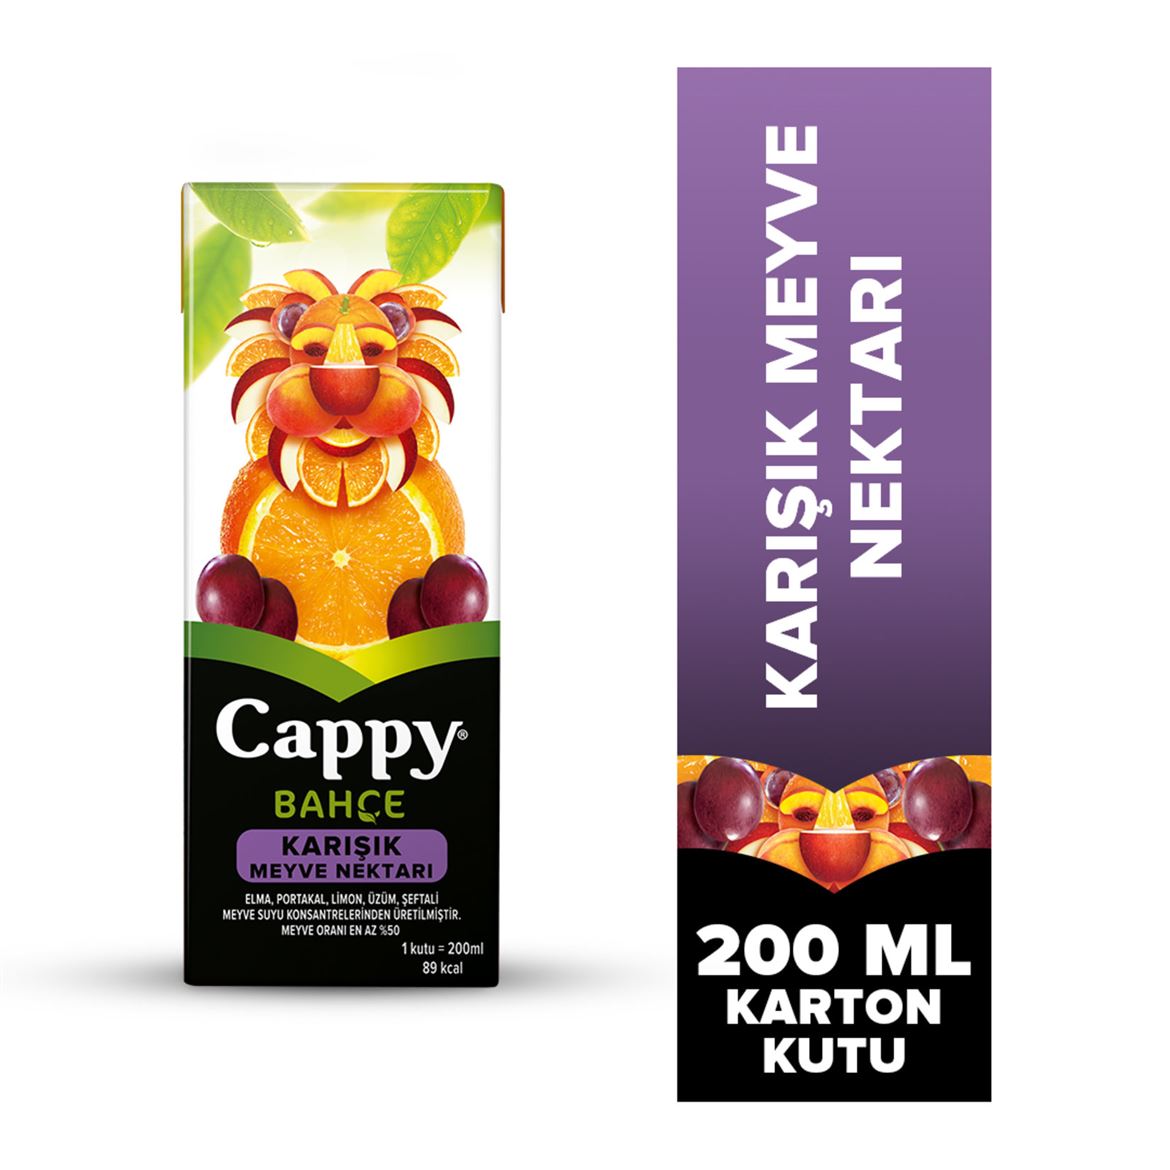 Cappy Bahçe Karışık Meyve Nektarı Karton Kutu 200 ML